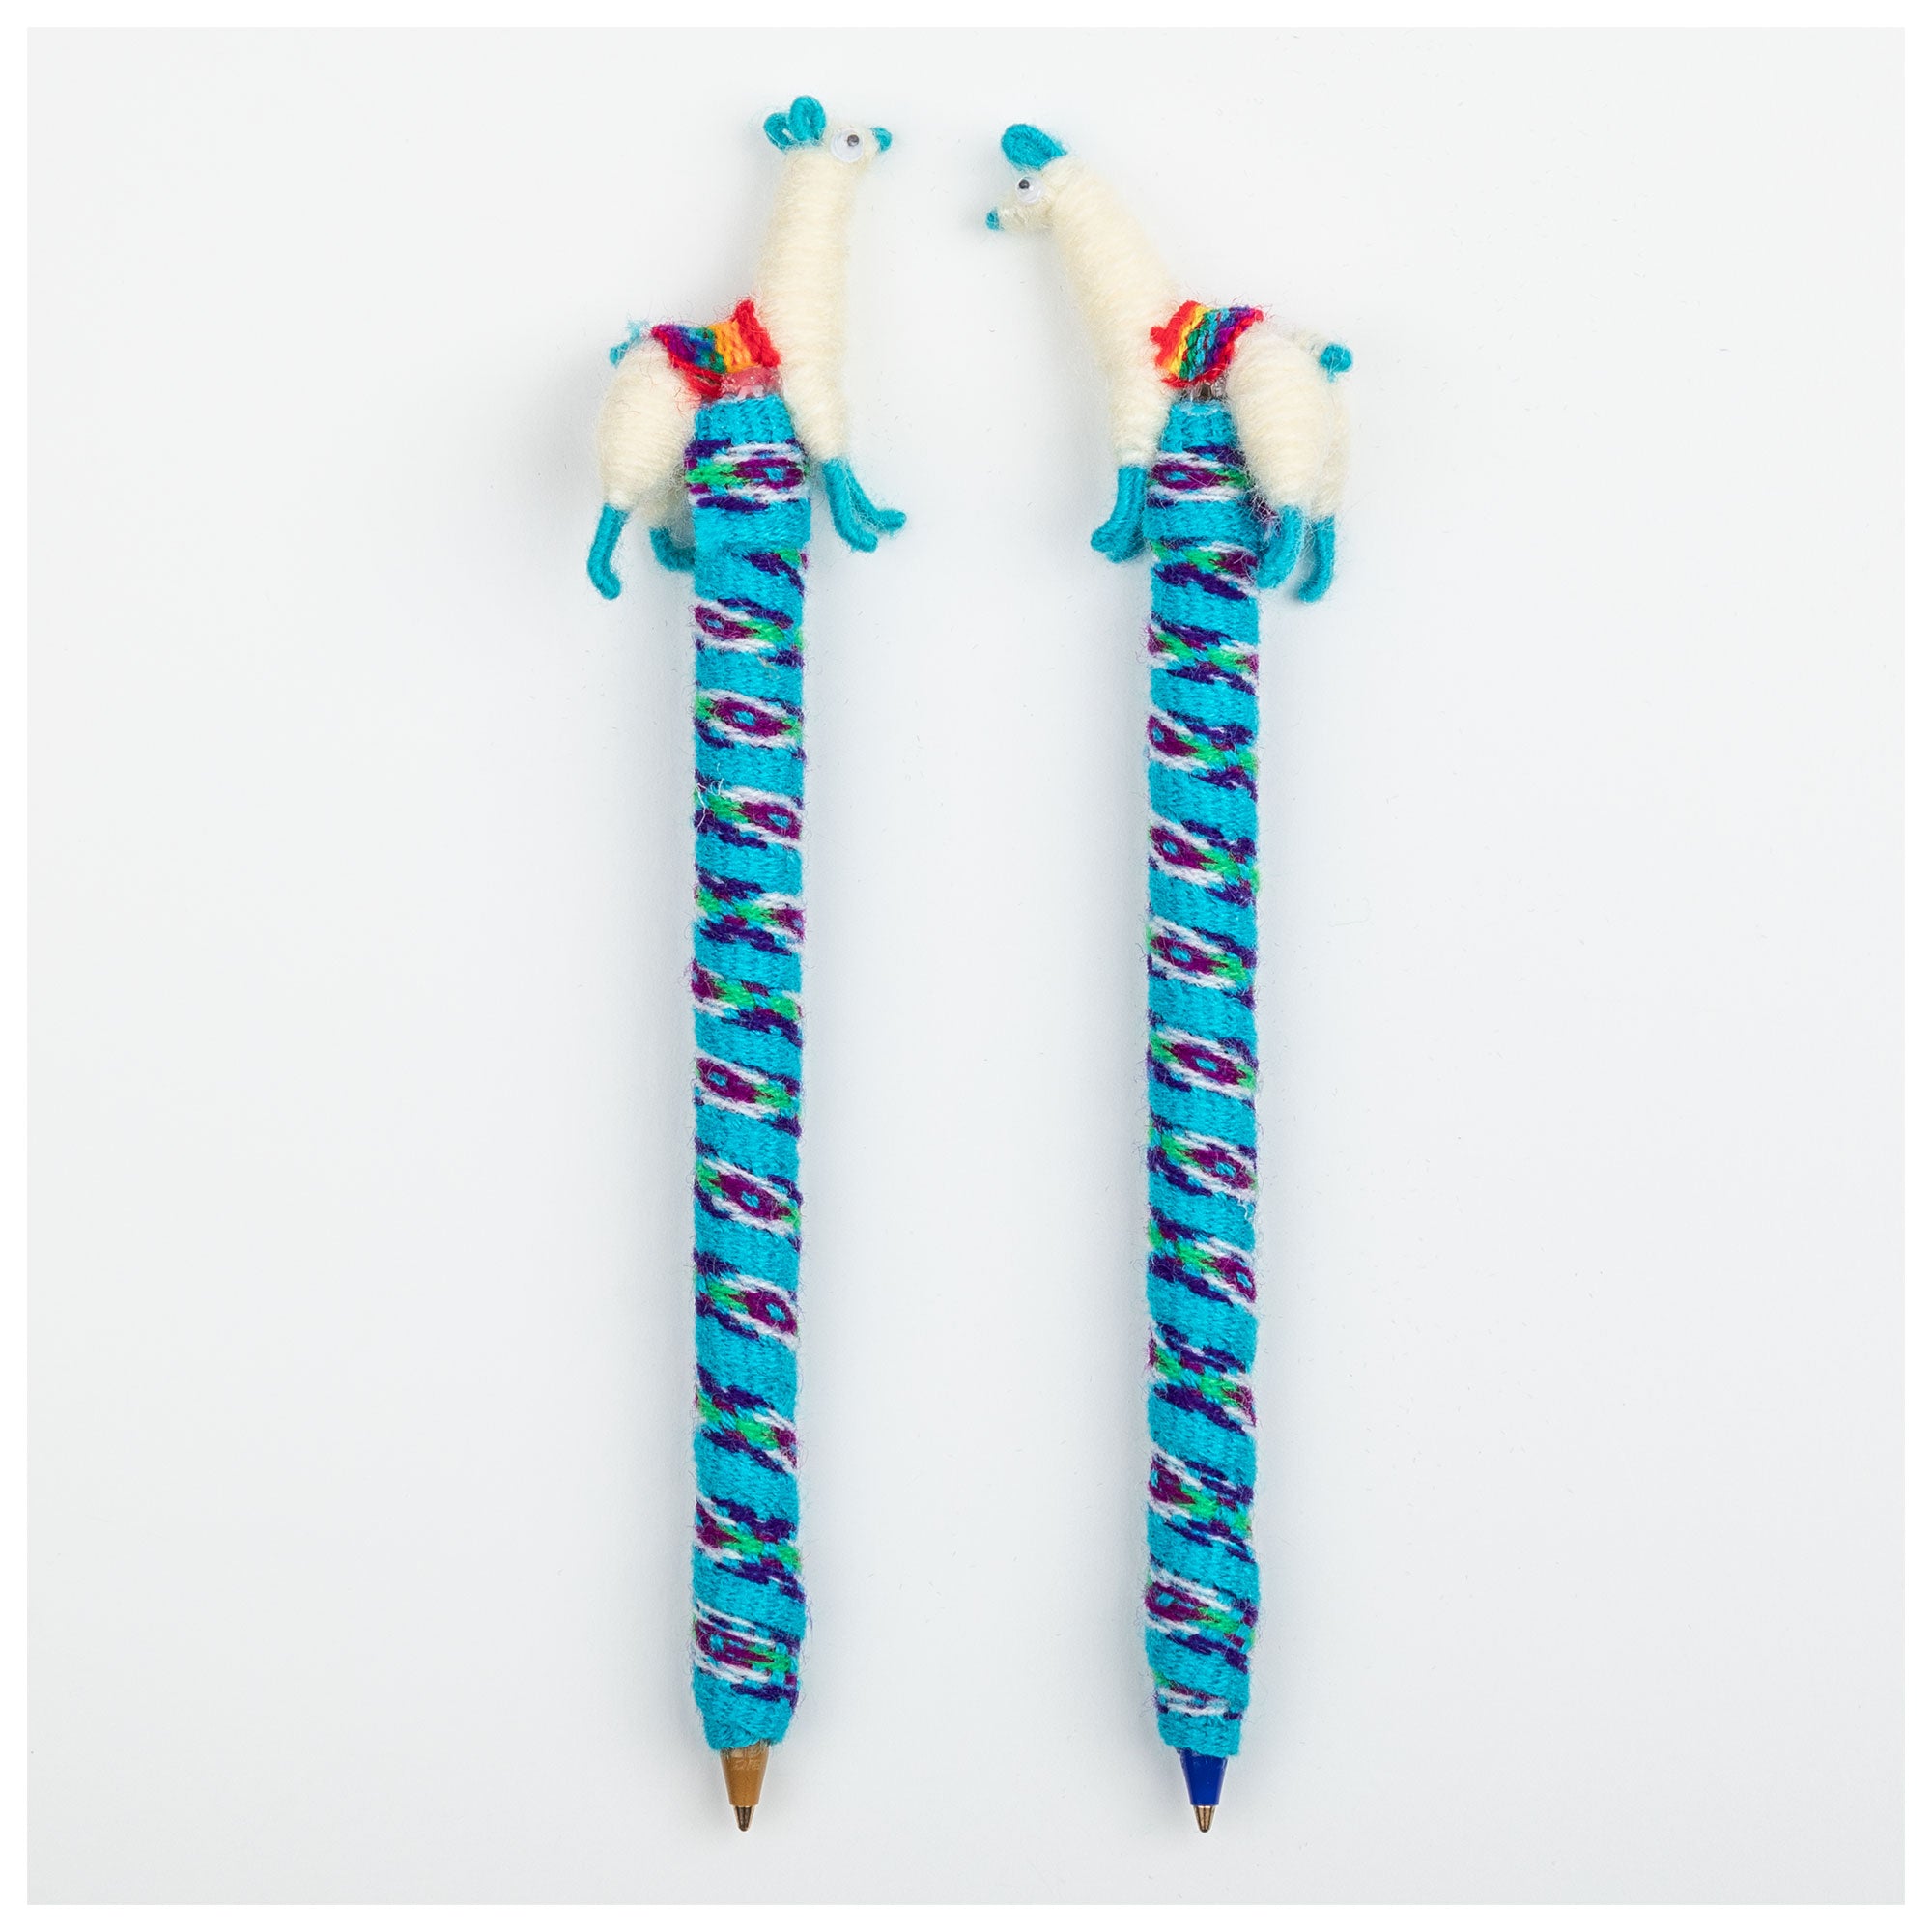 Cute Llama Handmade Pen - Set Of 2 - Turquoise